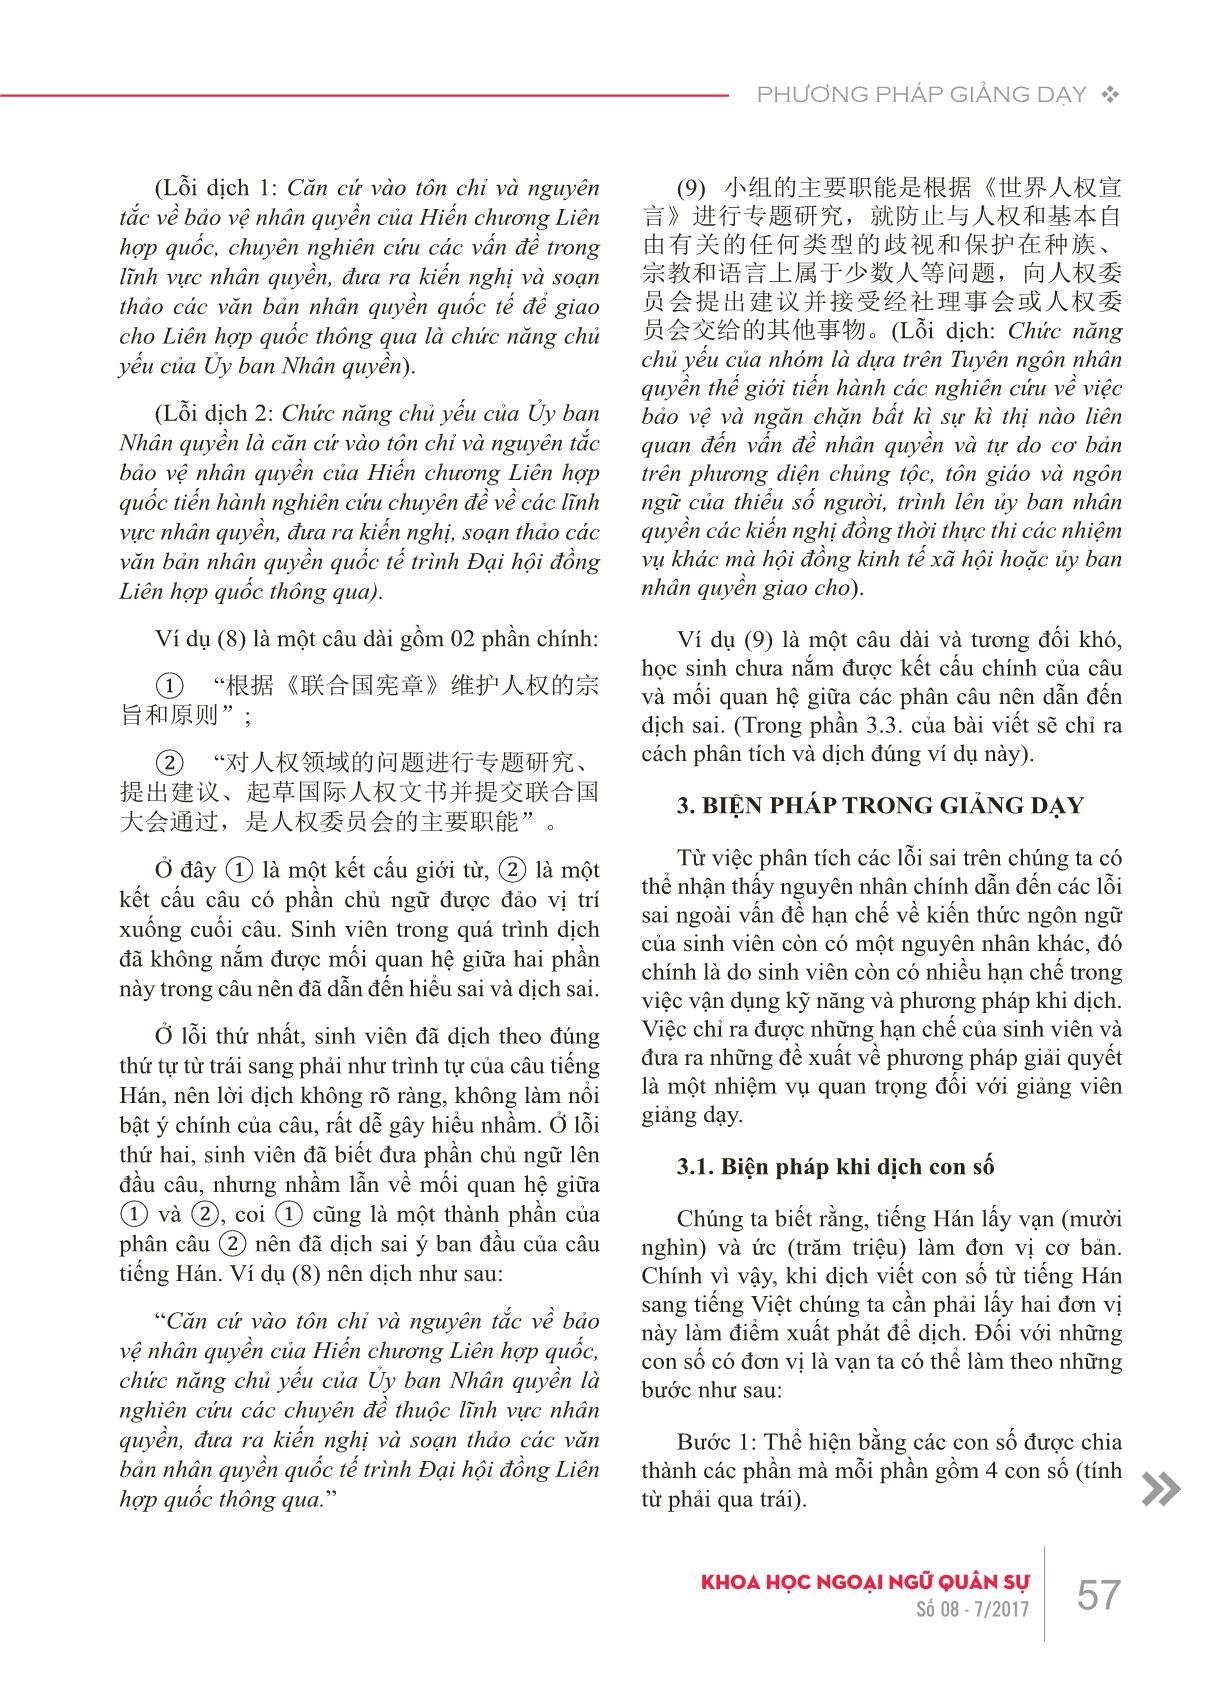 Những lỗi sai thường gặp của sinh viên khi dịch viết Hán-Việt do hạn chế về kiến thức ngôn ngữ và giải pháp trong giảng dạy trang 4